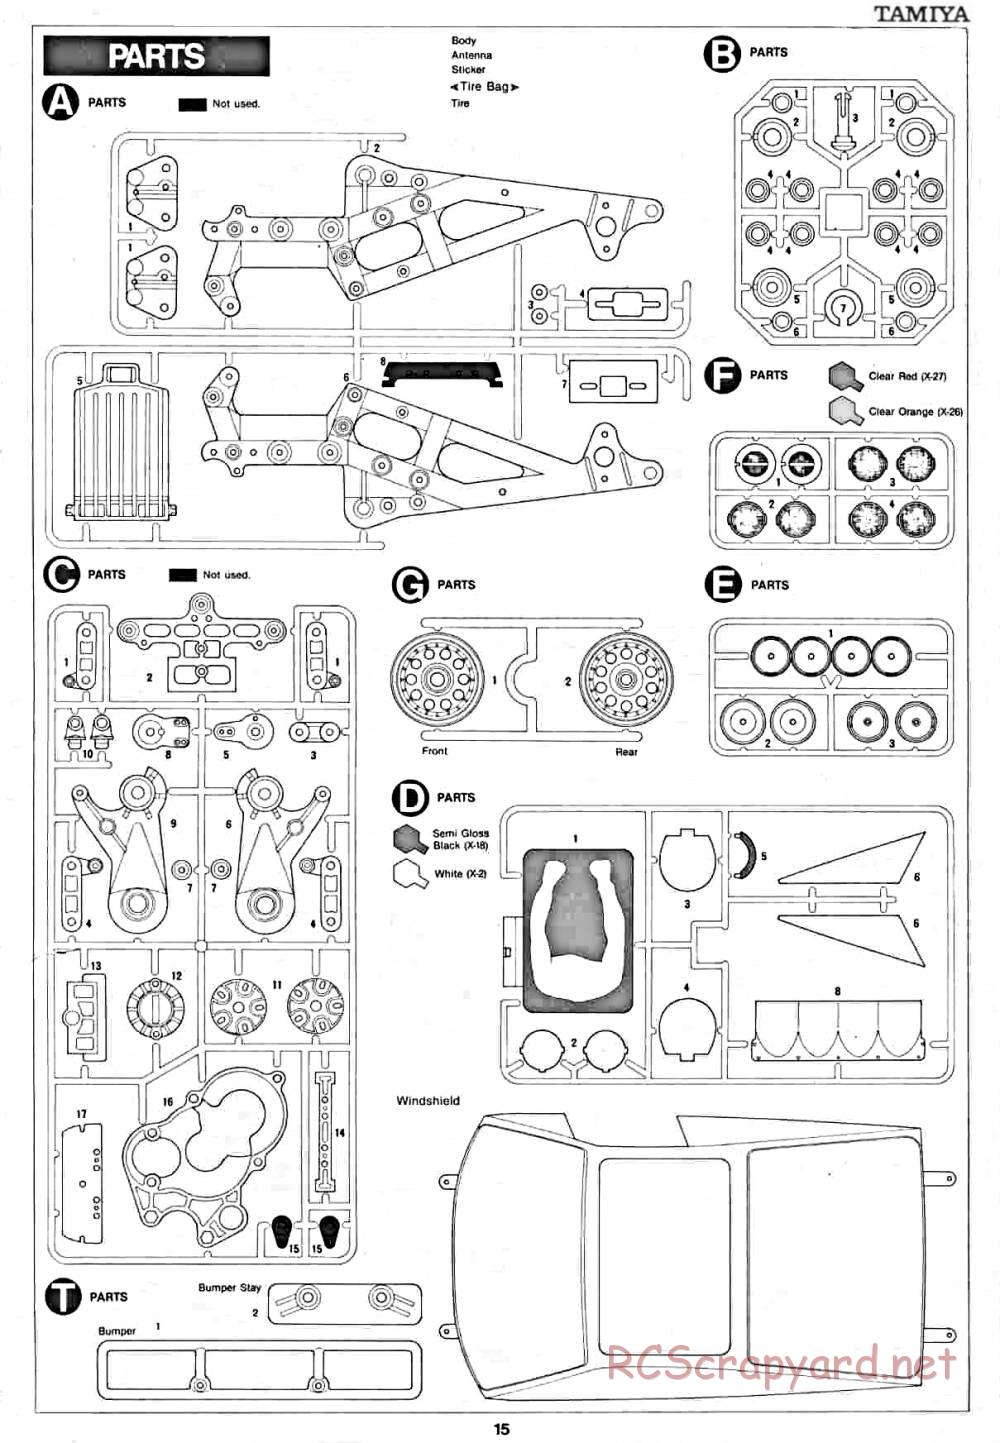 Tamiya - Lancia Rally - 58040 - Manual - Page 15